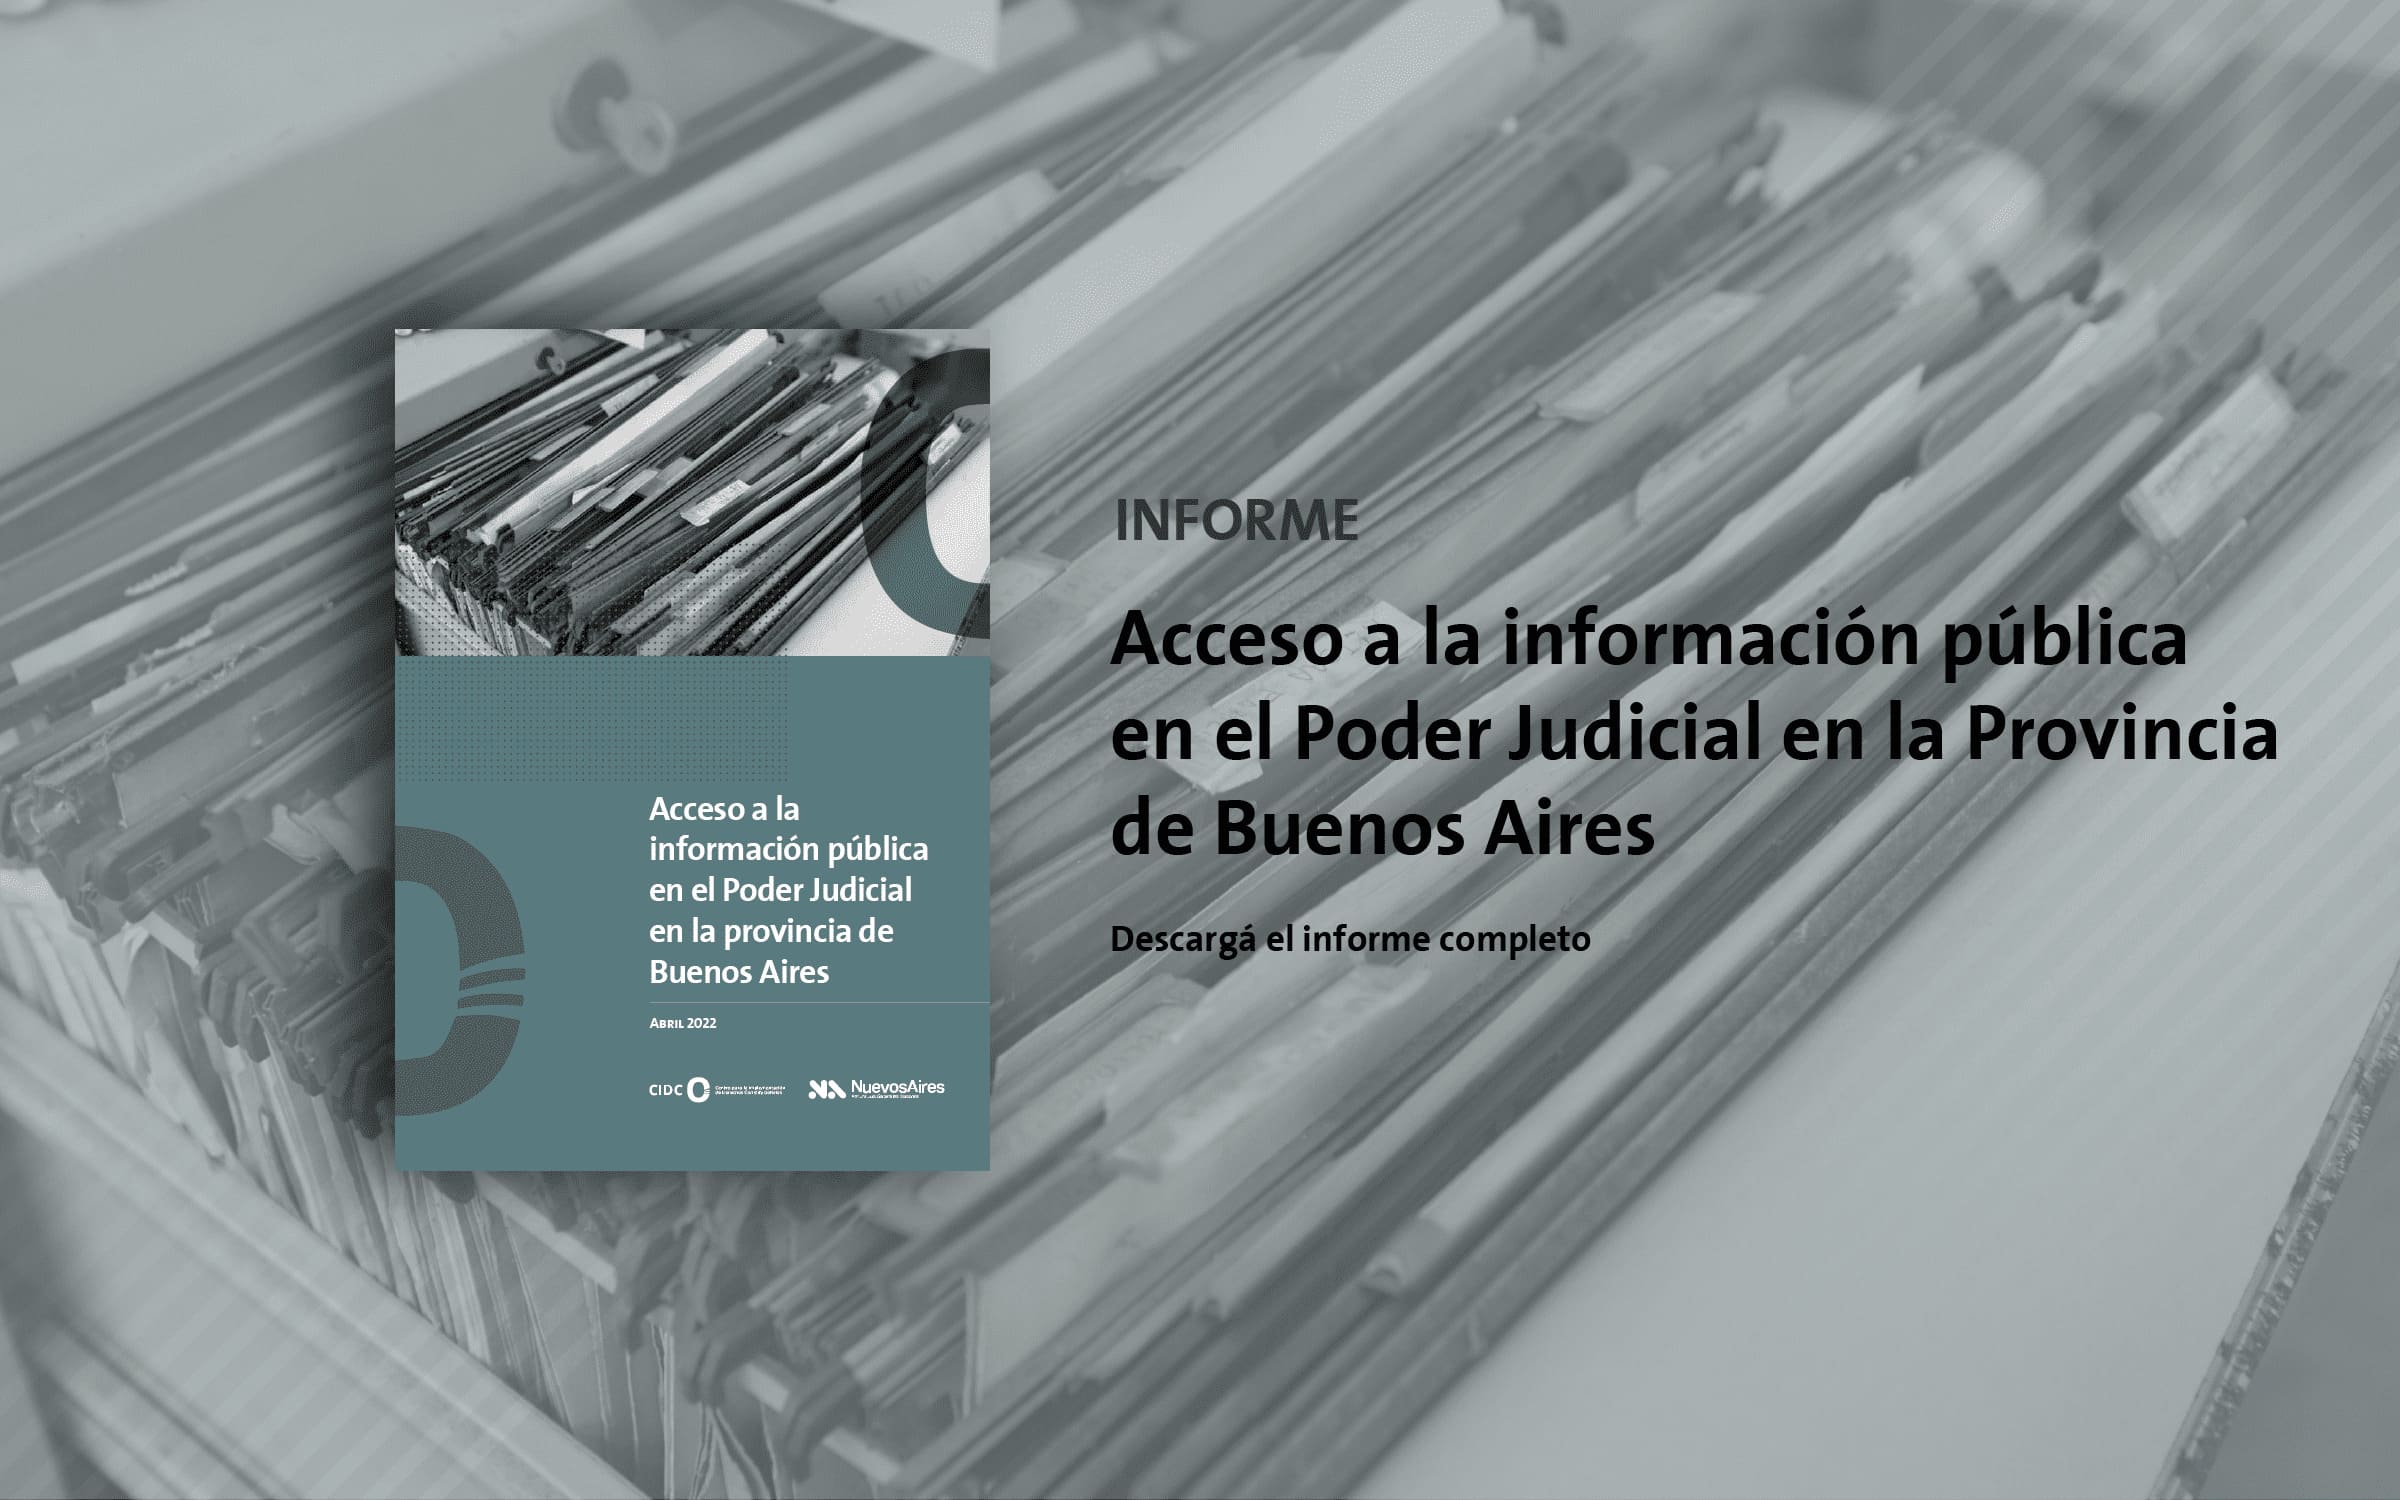 acceso a la informacion publica en el poder judicial de la provincia de Buenos Aires